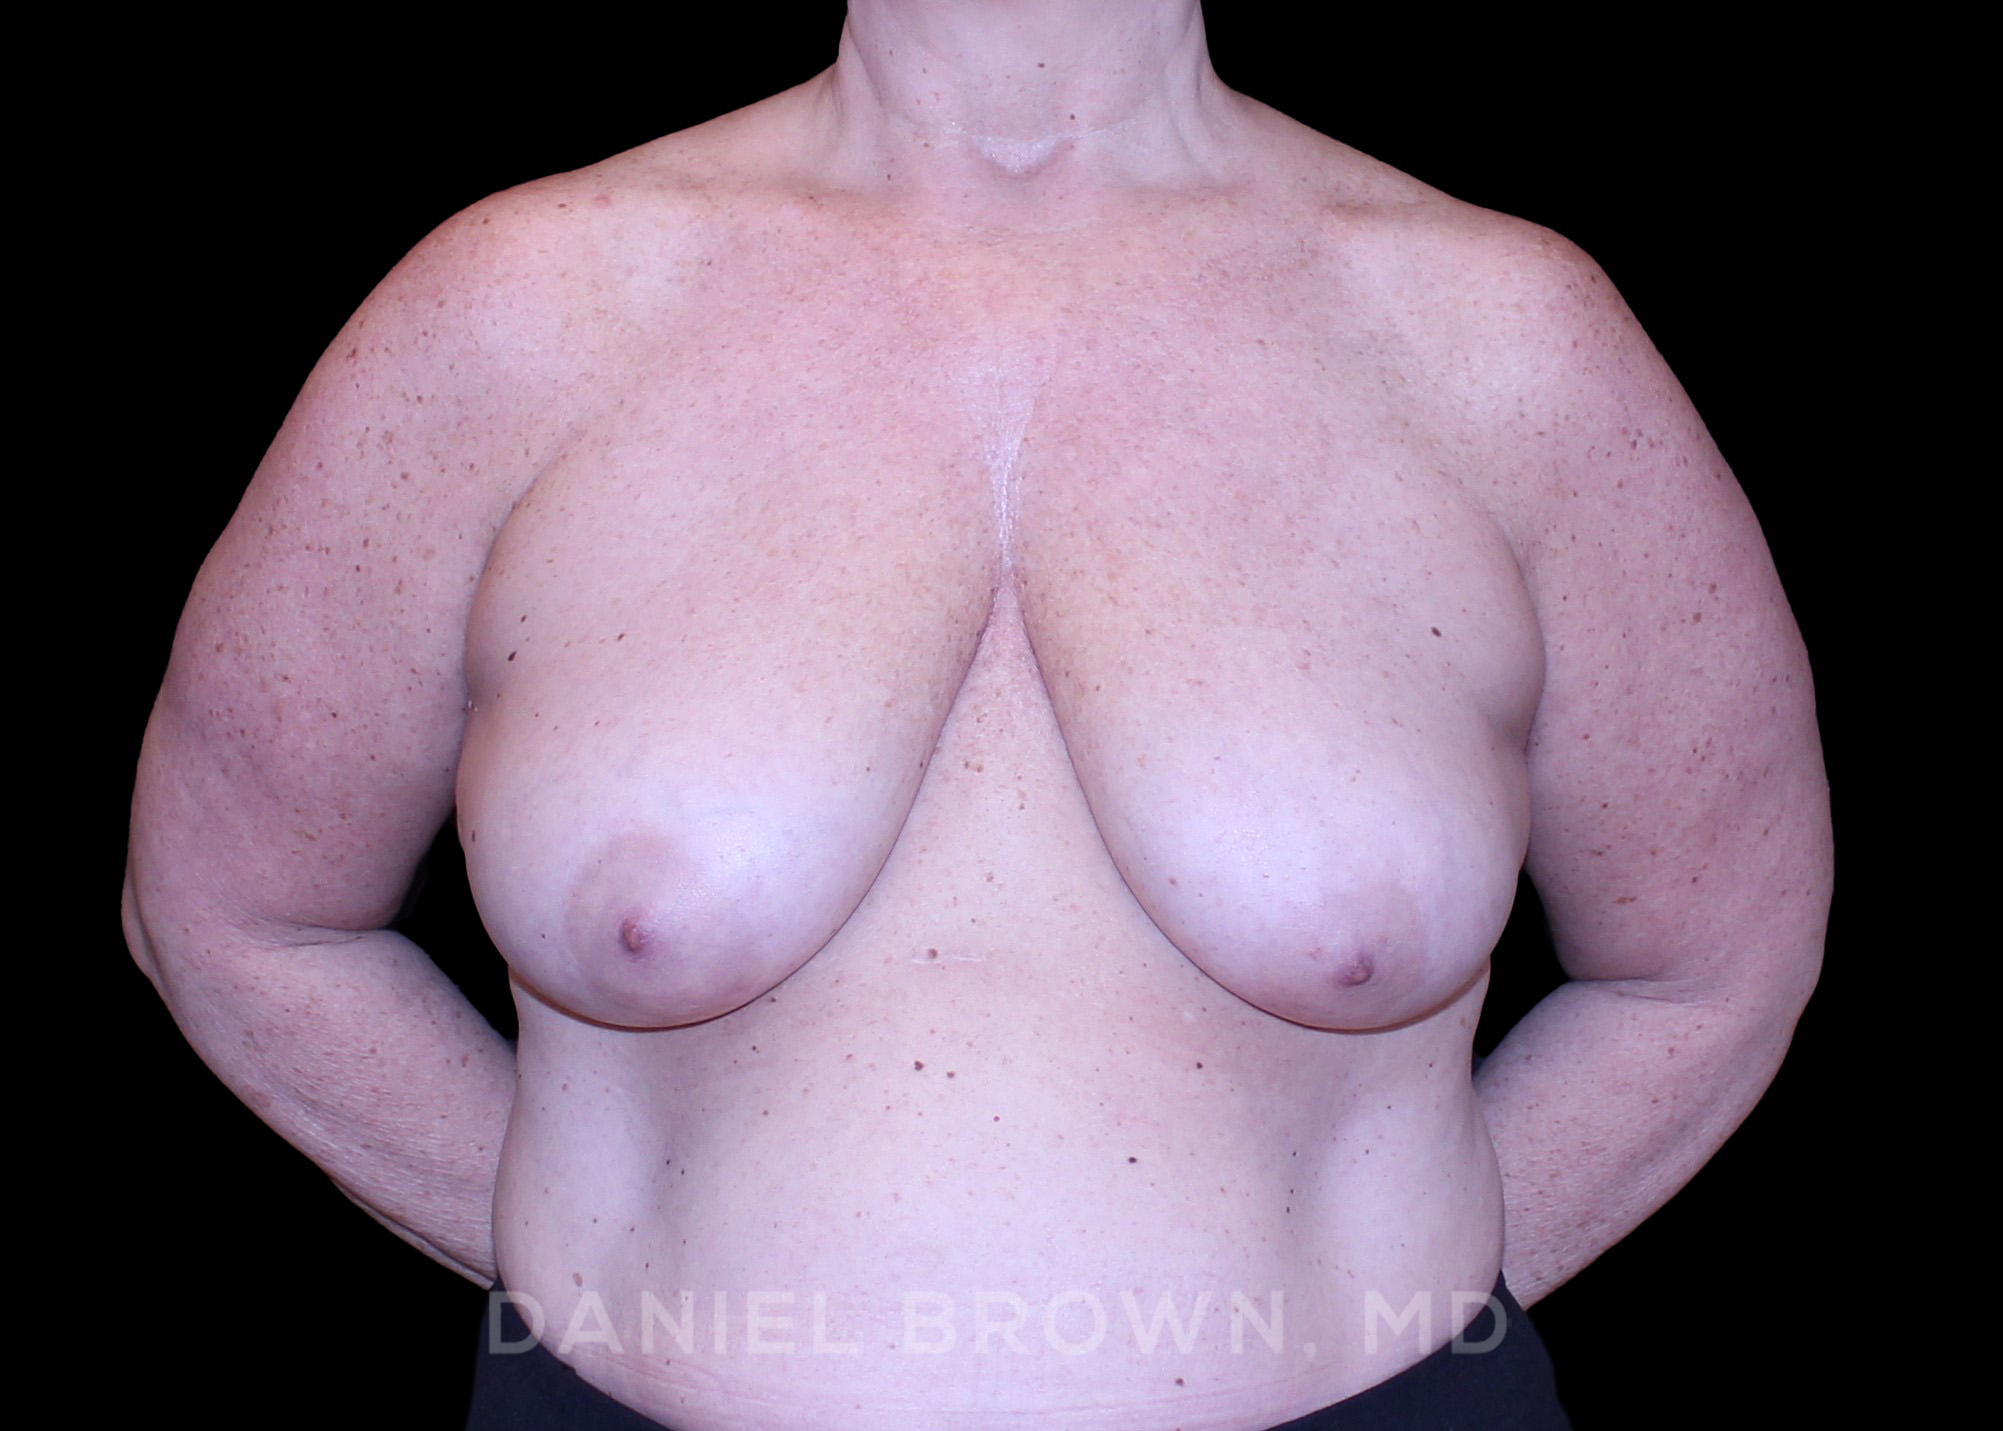 Bellesoma Breast Reduction, Daniel Brown M.D